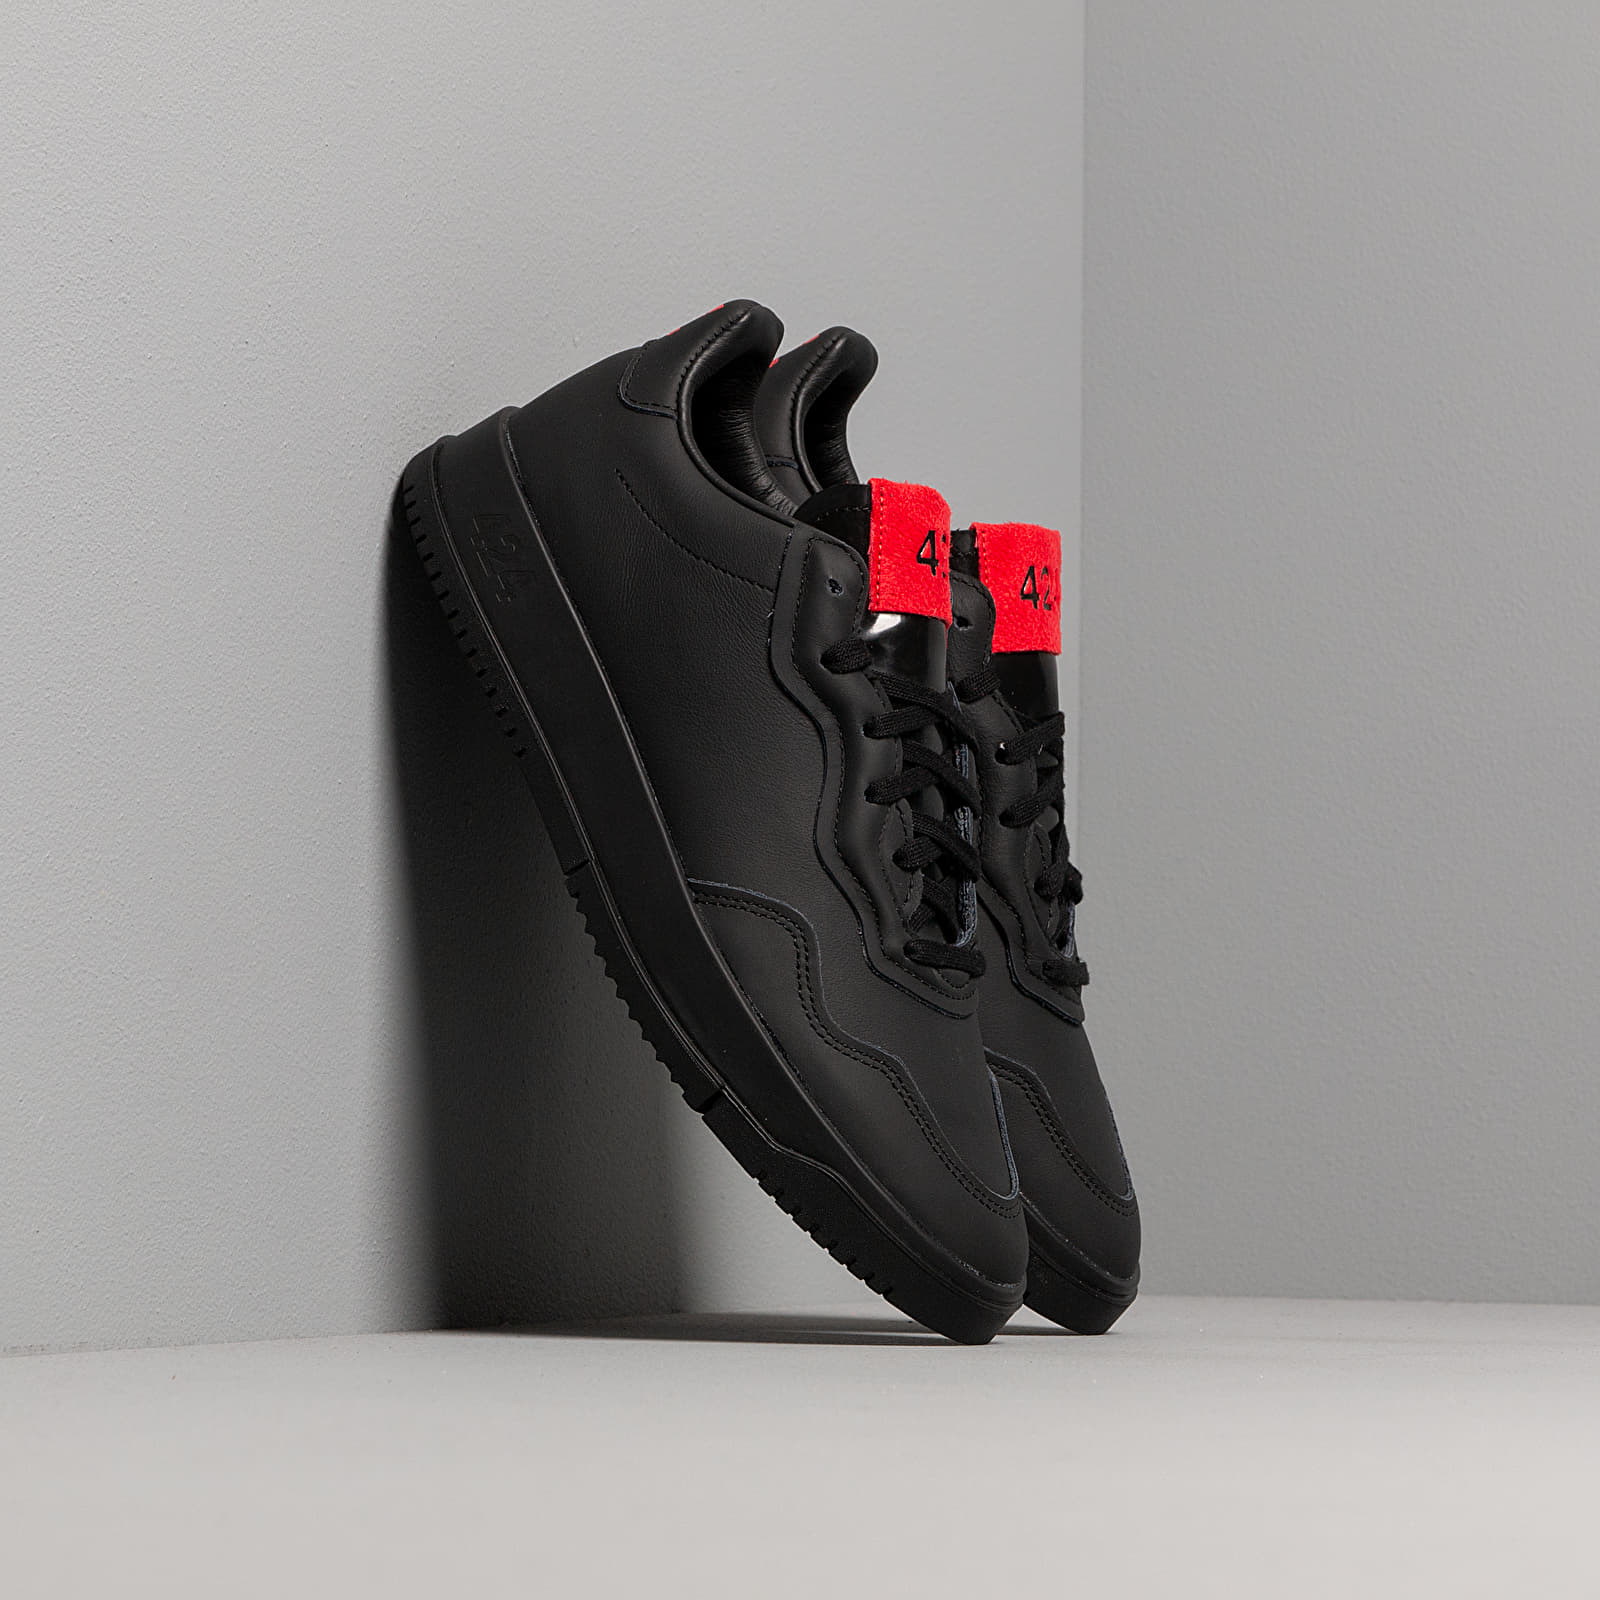 Încălțăminte și sneakerși pentru bărbați adidas x 424 SC Premiere Supplier Colour/ Supplier Colour/ Scarlet